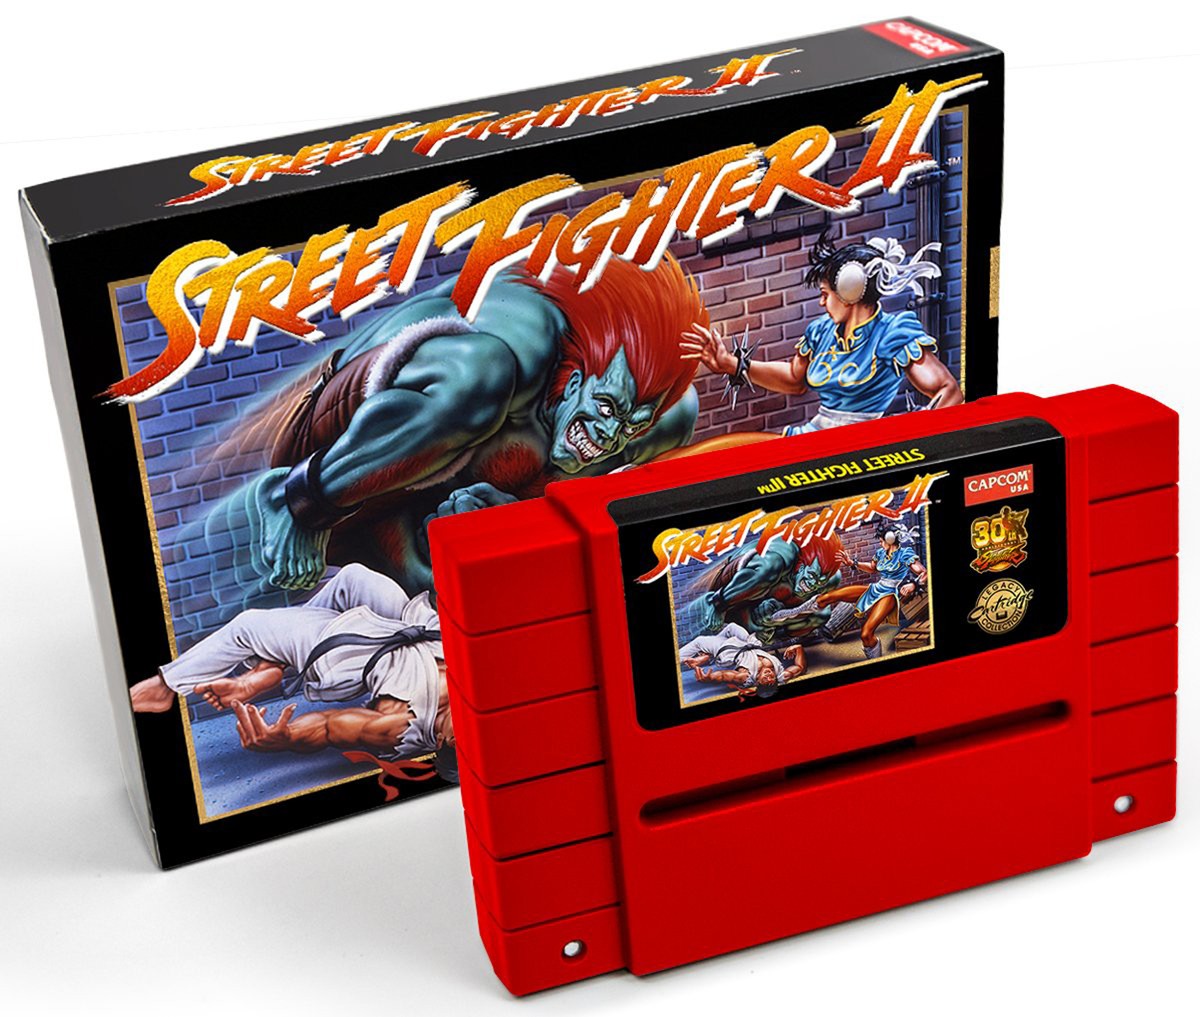 Street Fighter 6 e outras opções de jogos de luta - Belém.com.br